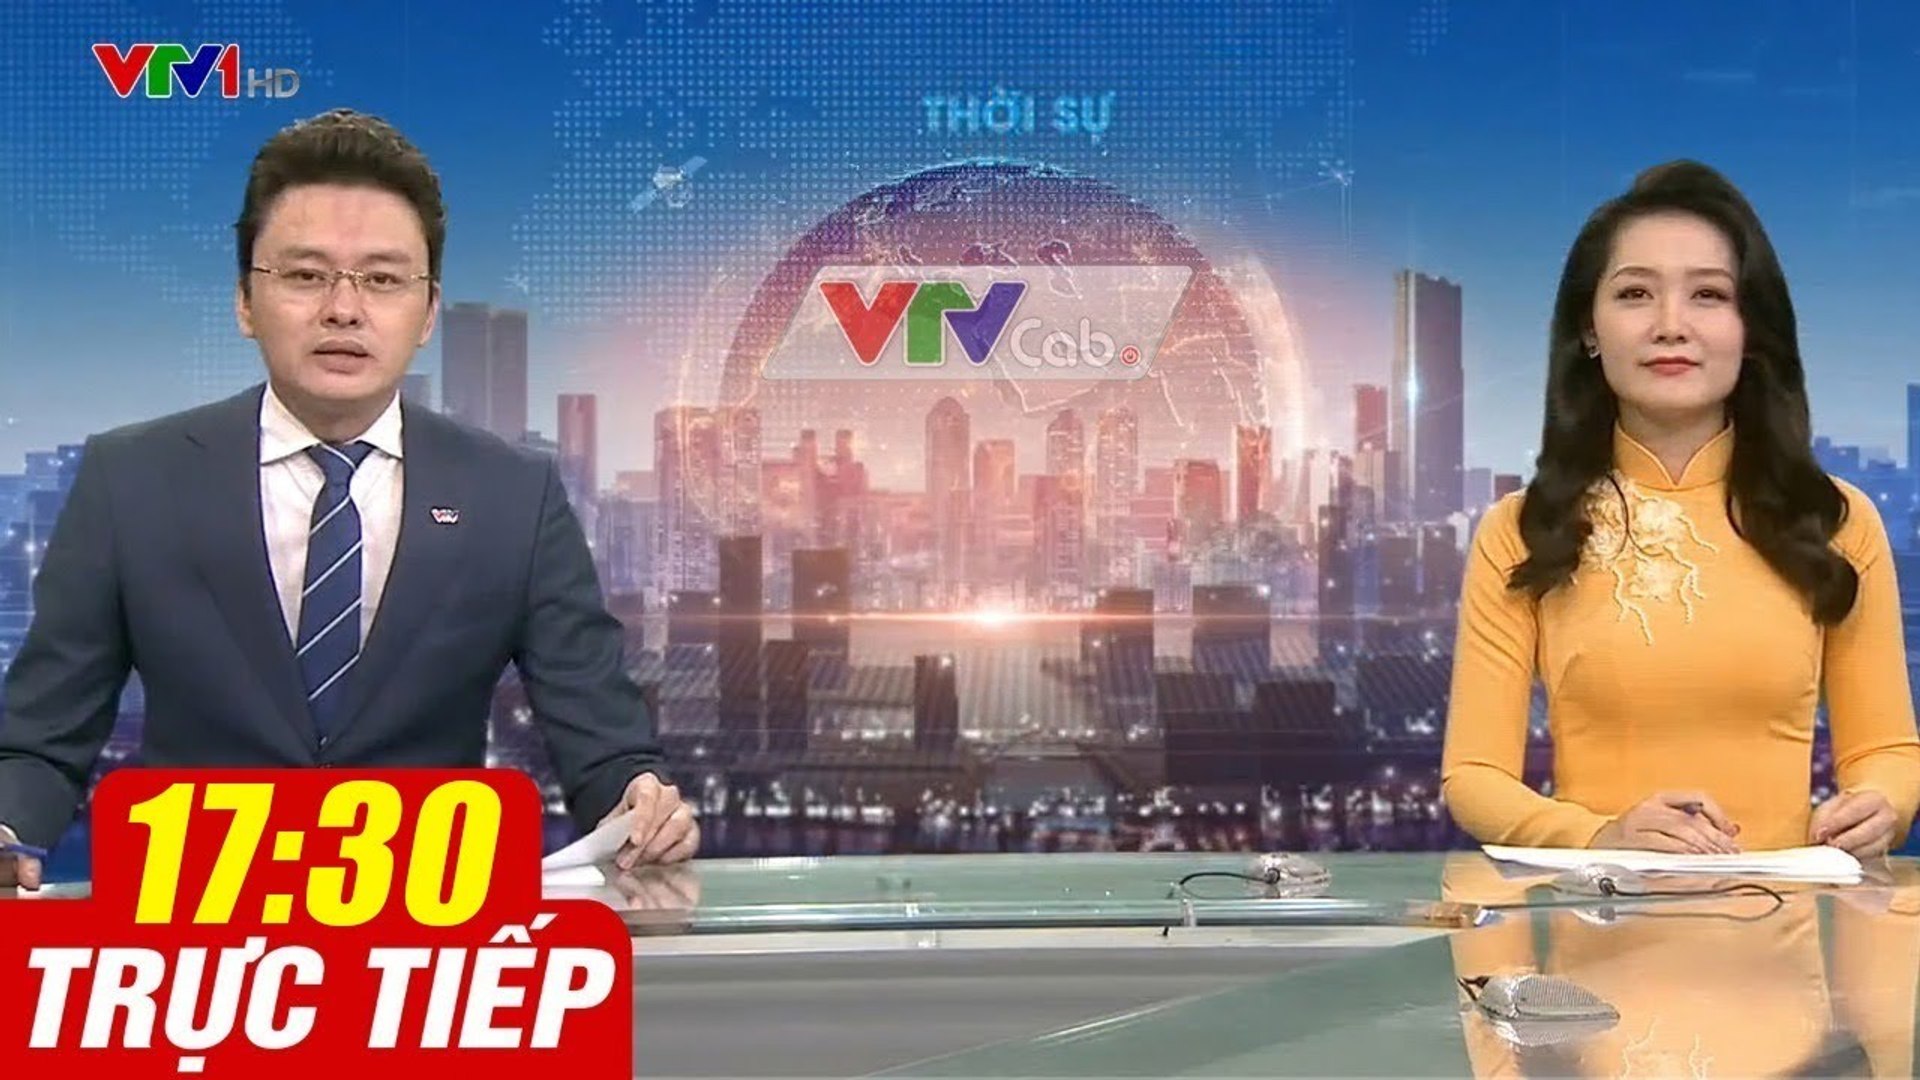 Trực Tiếp VIỆT NAM HÔM NAY 17h30 ngày 4.08.2020  Tin tức thời sự VTV1 mới nhất hôm nay